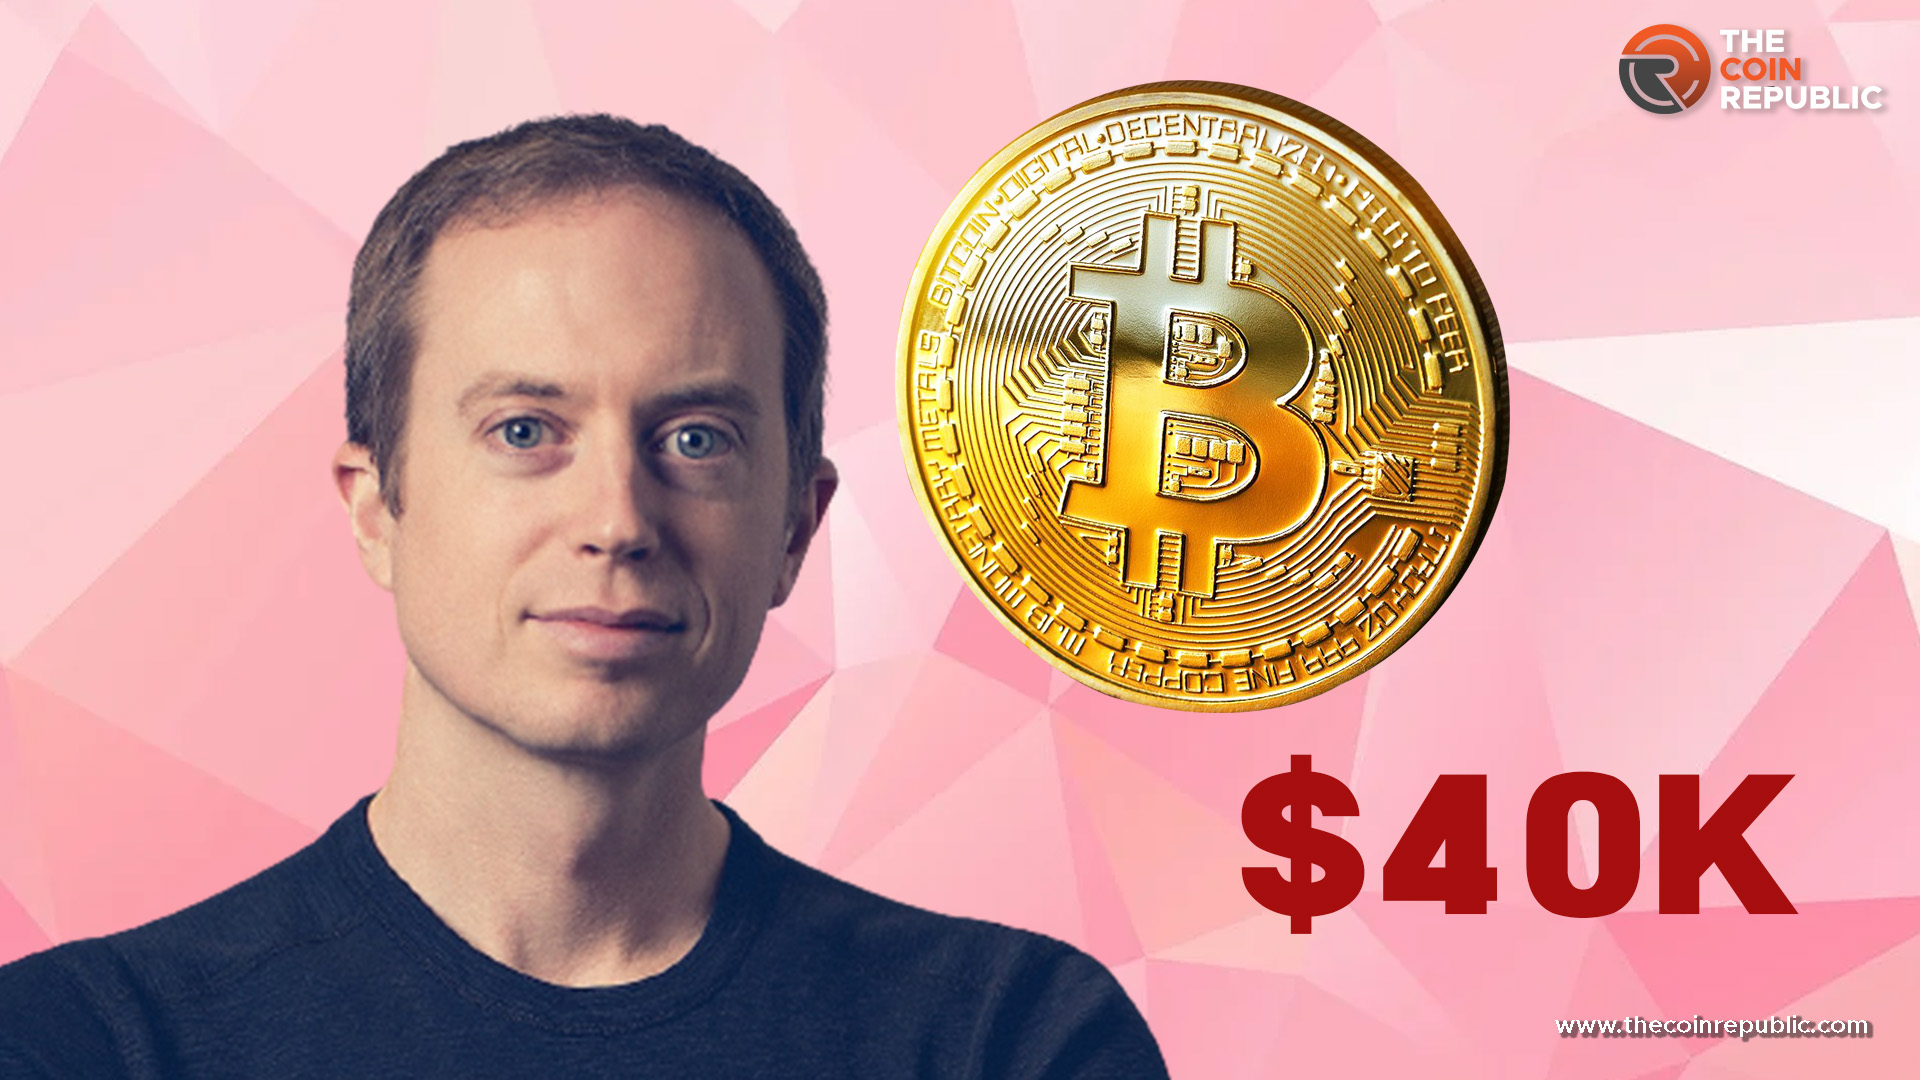 Bitcoin to hit $40K by June 2023: Erik Voorhees